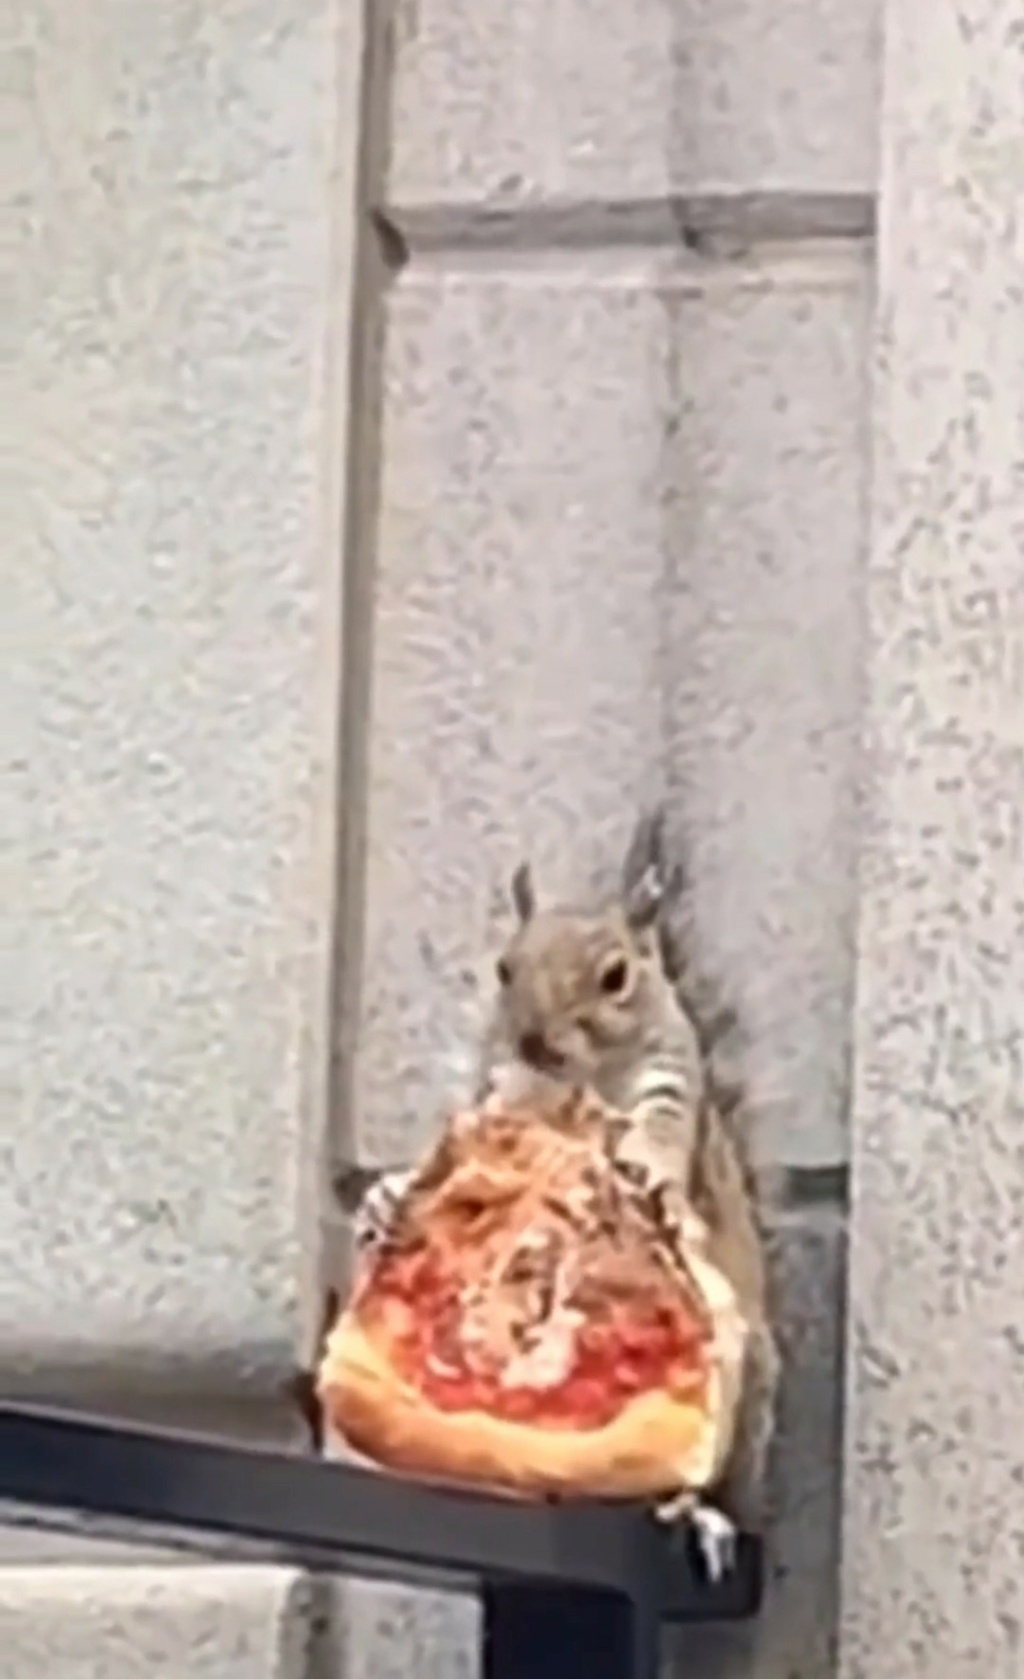 Gli scoiattoli non mangiano solo noccioline - Pagina 5 Scree941